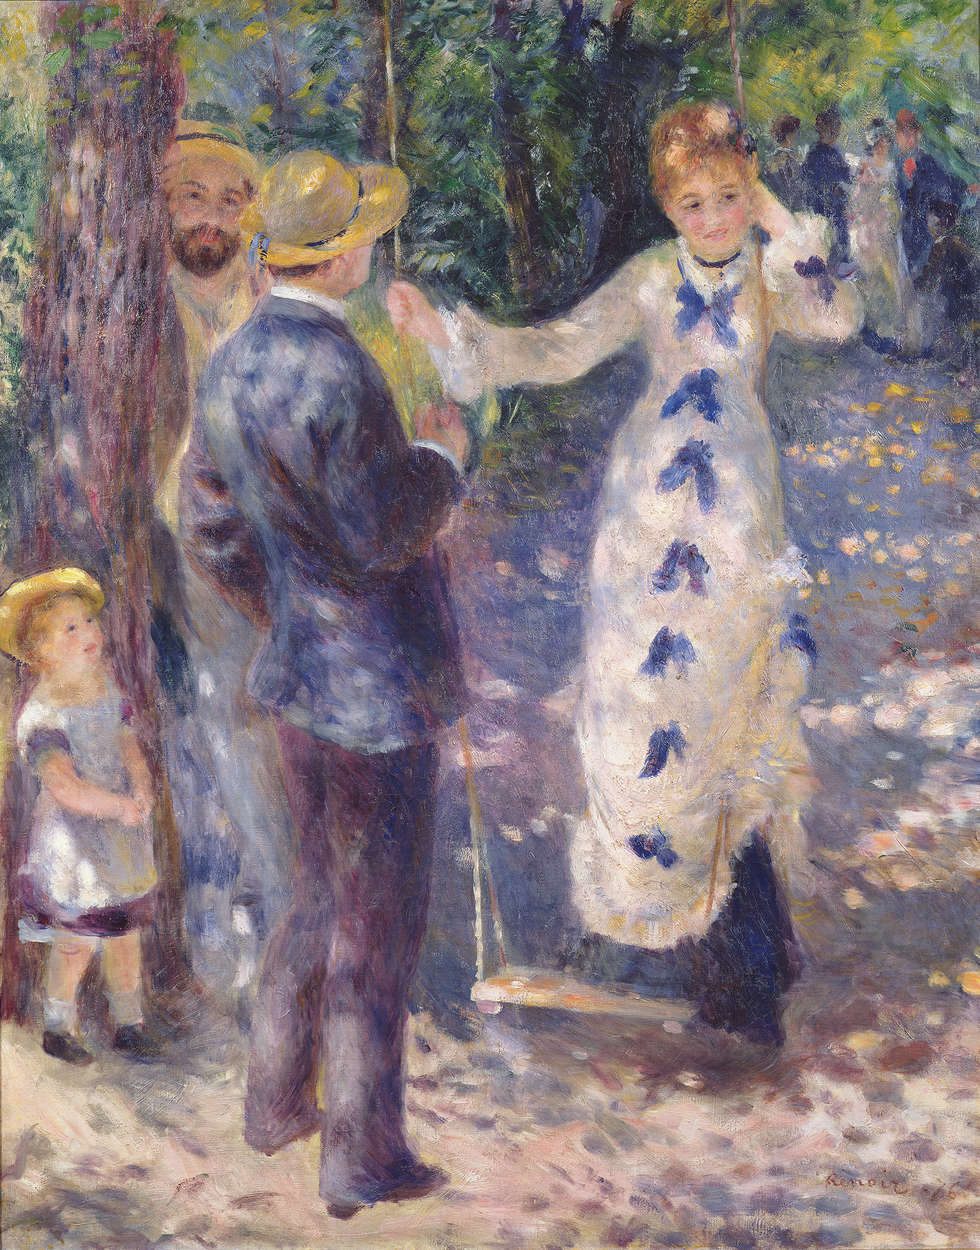             Papier peint panoramique "Sur la balançoire" de Pierre Auguste Renoir
        